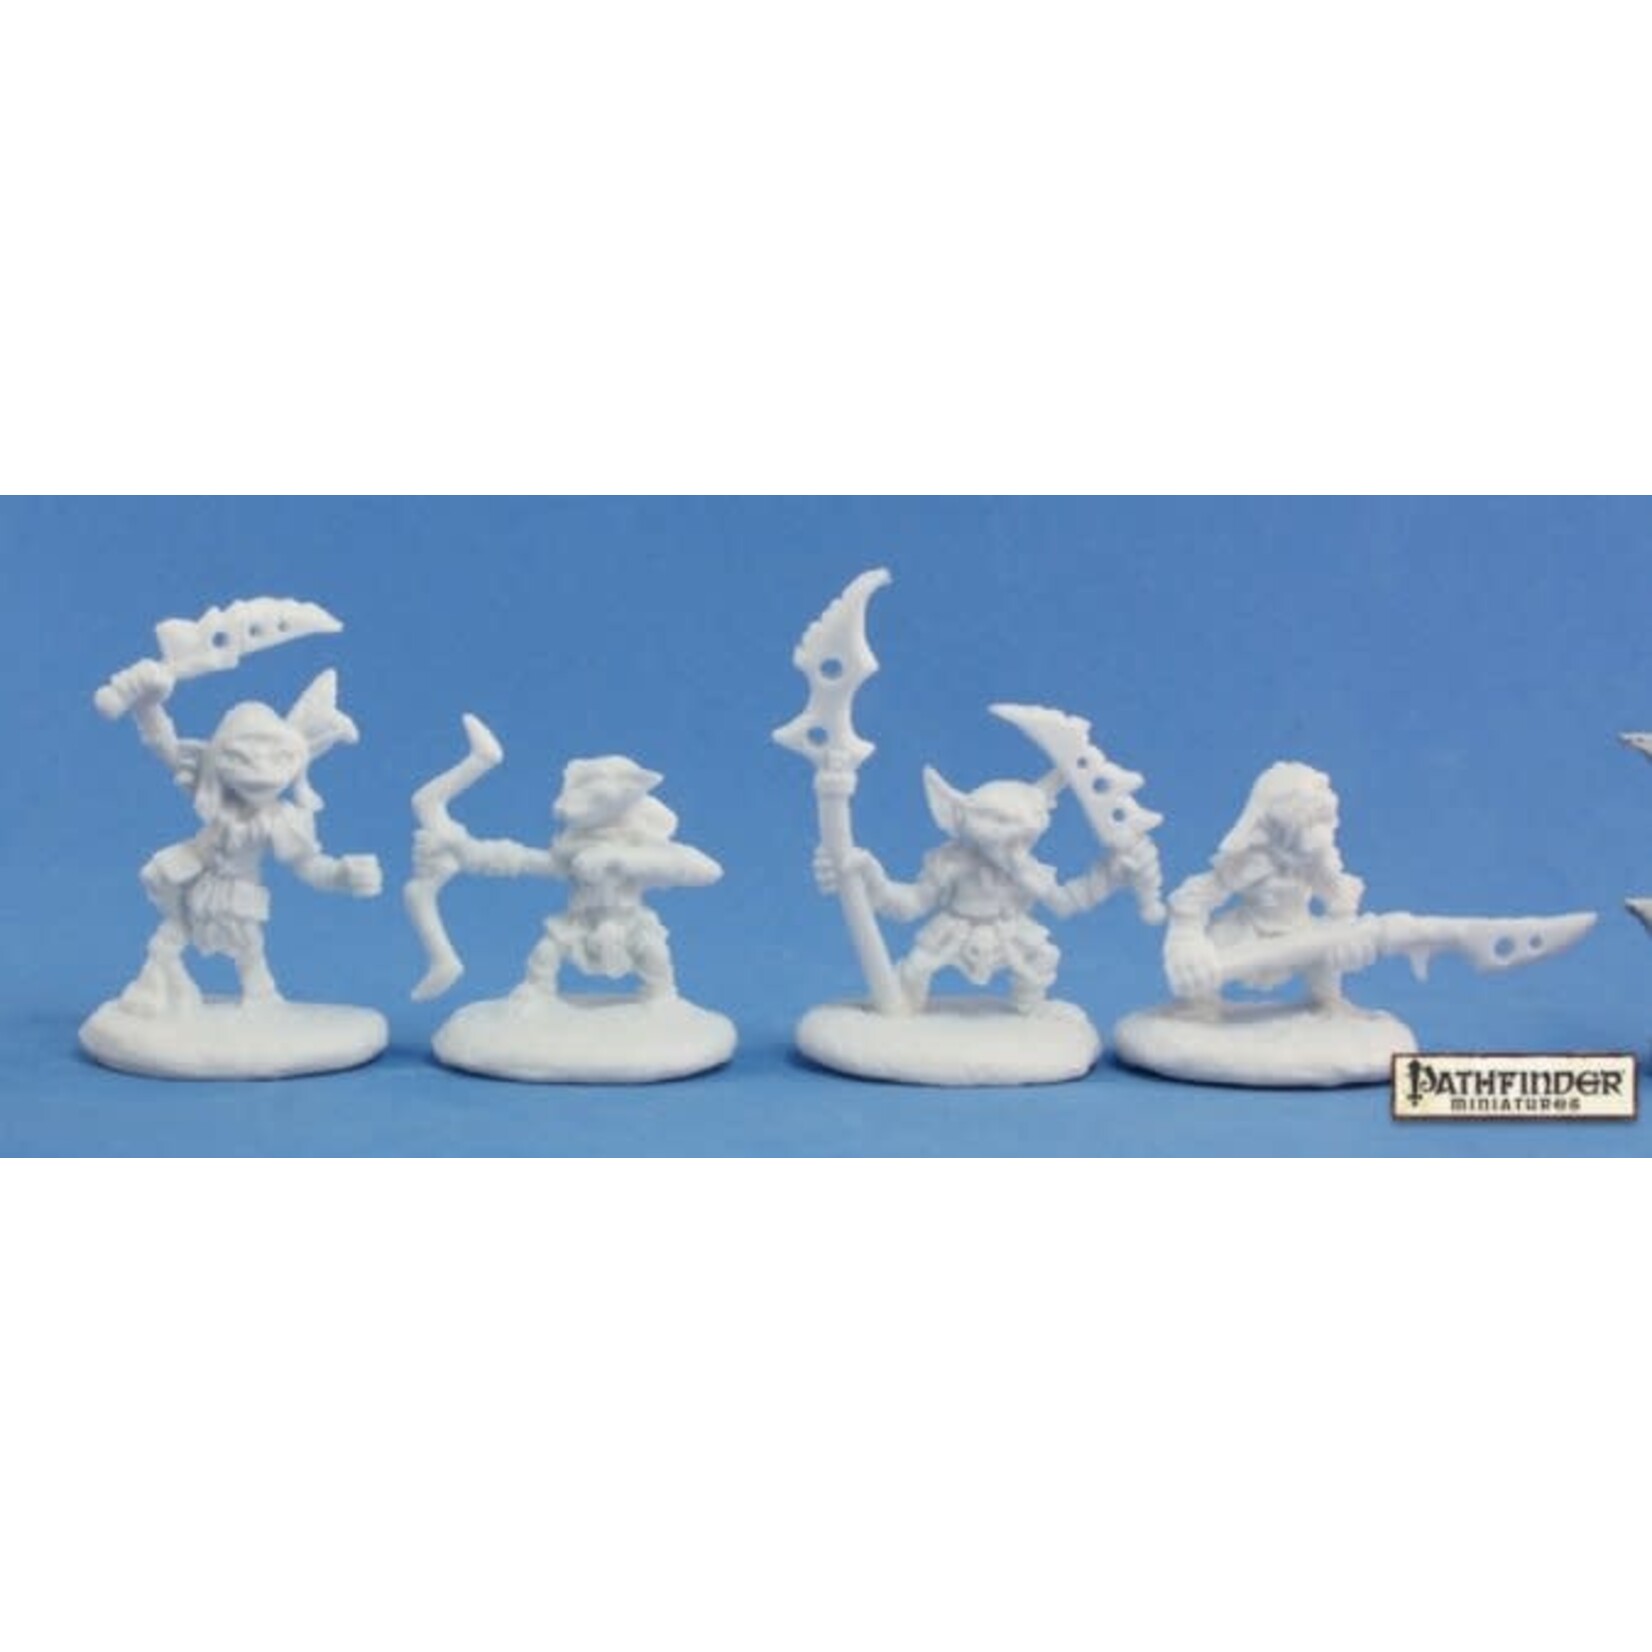 Reaper Miniatures Pathfinder Goblin Warriors